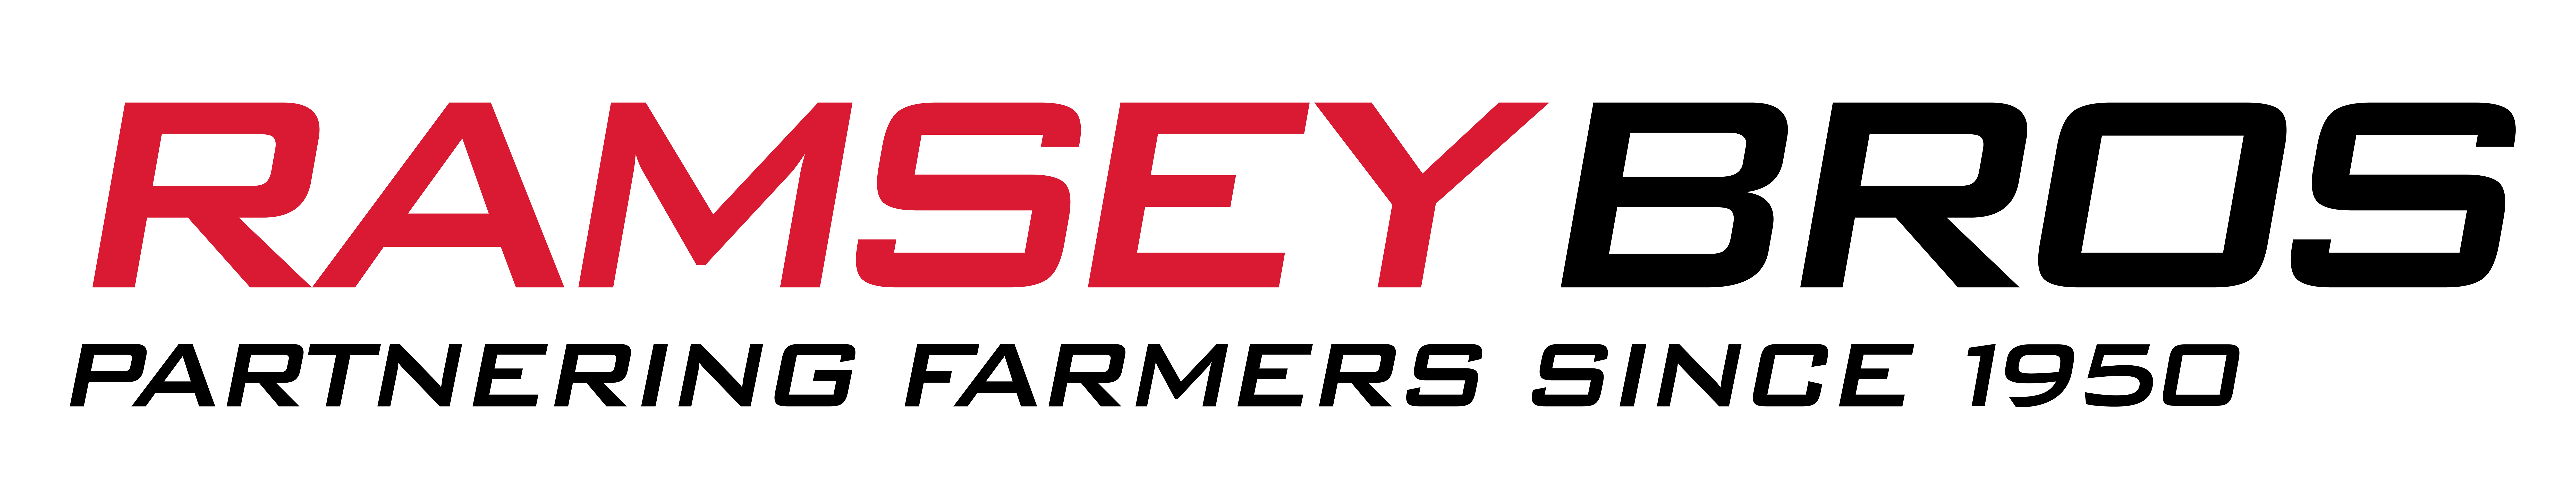 Ramsey Bros logo